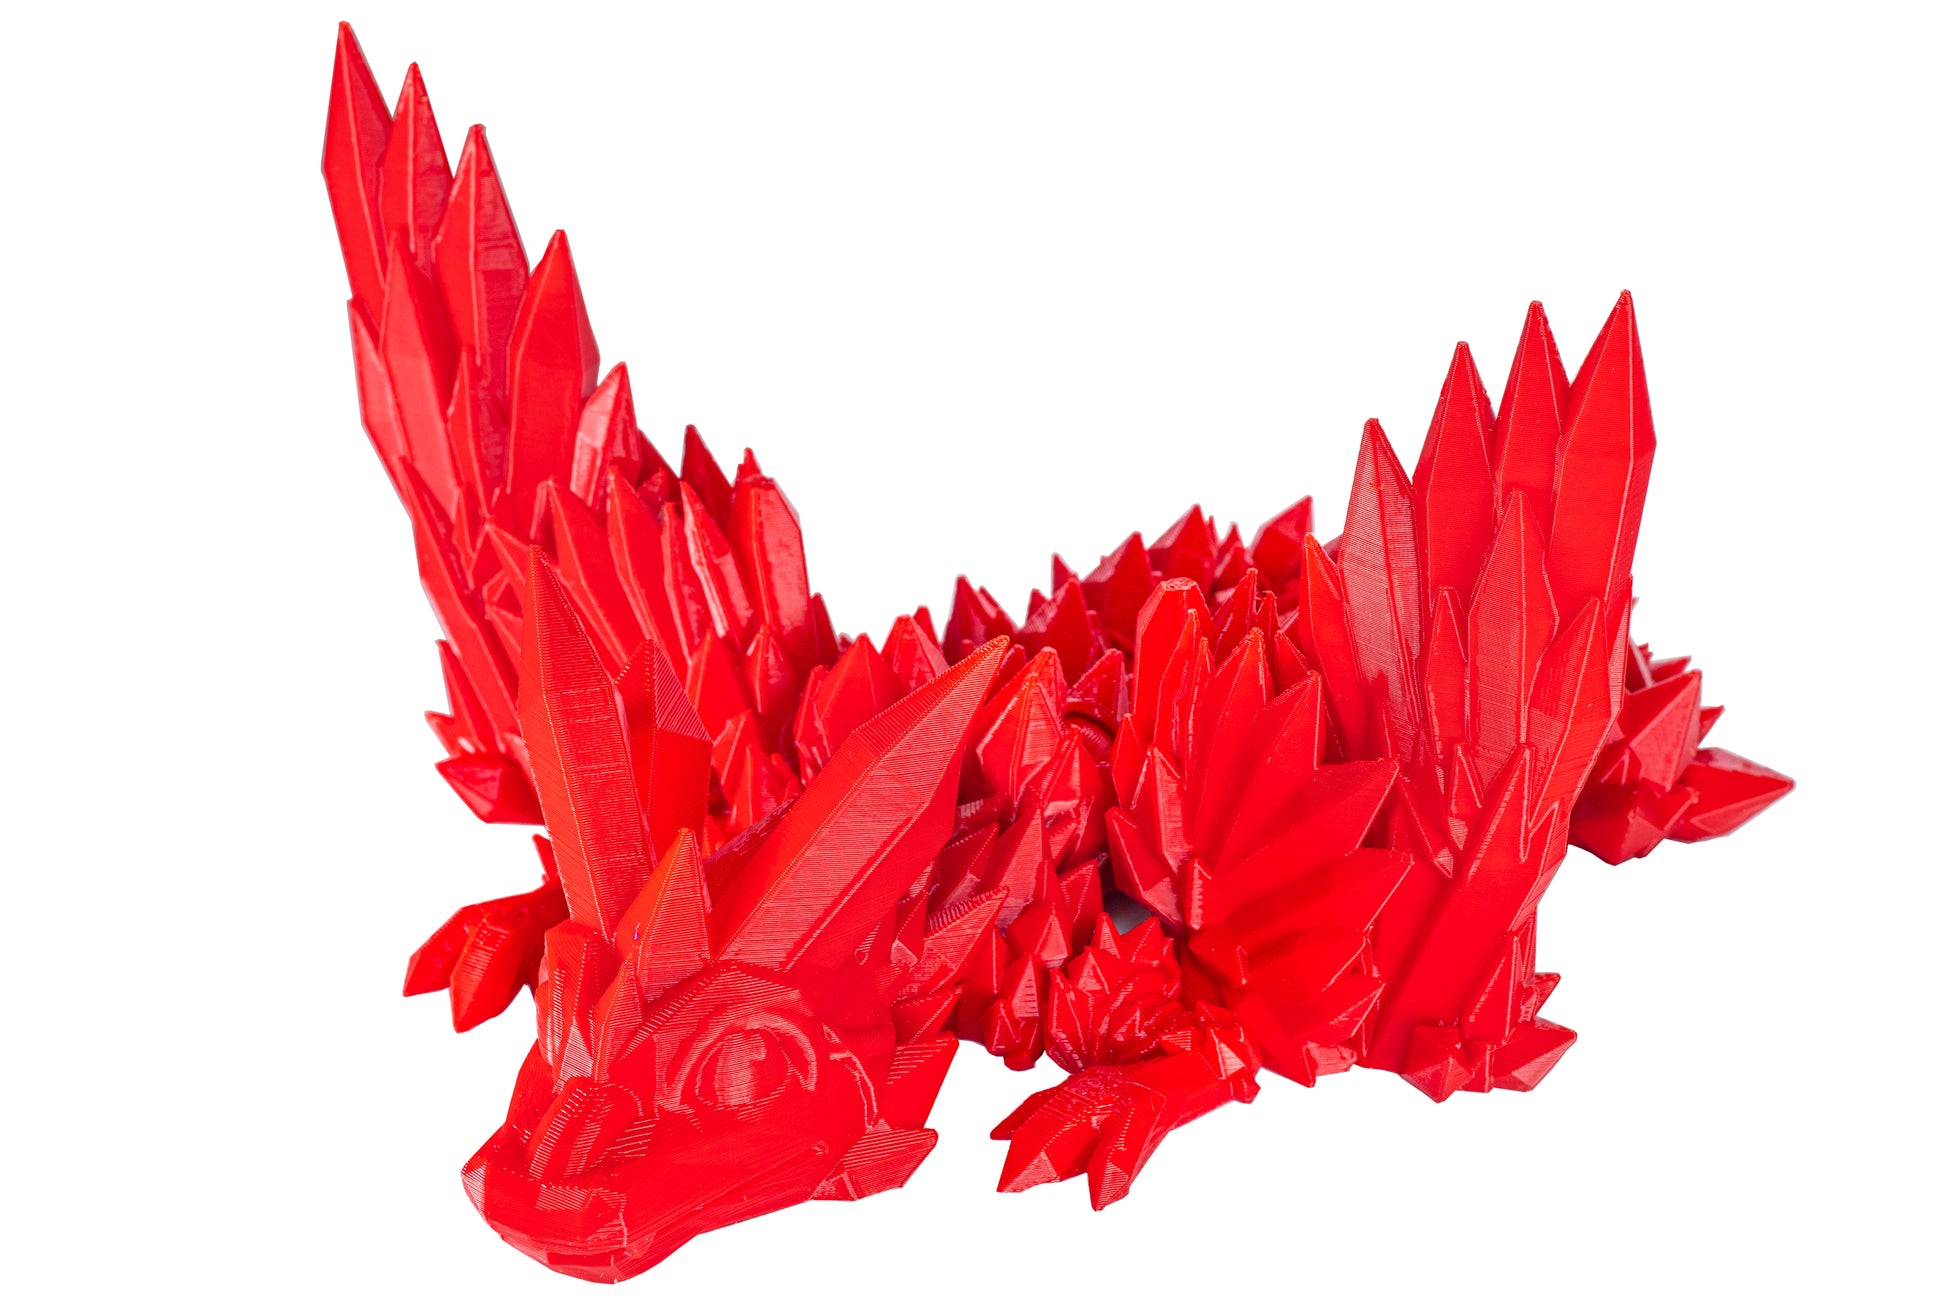 PLA Filament 1,75mm – 250 gram - Red - 3D&Print